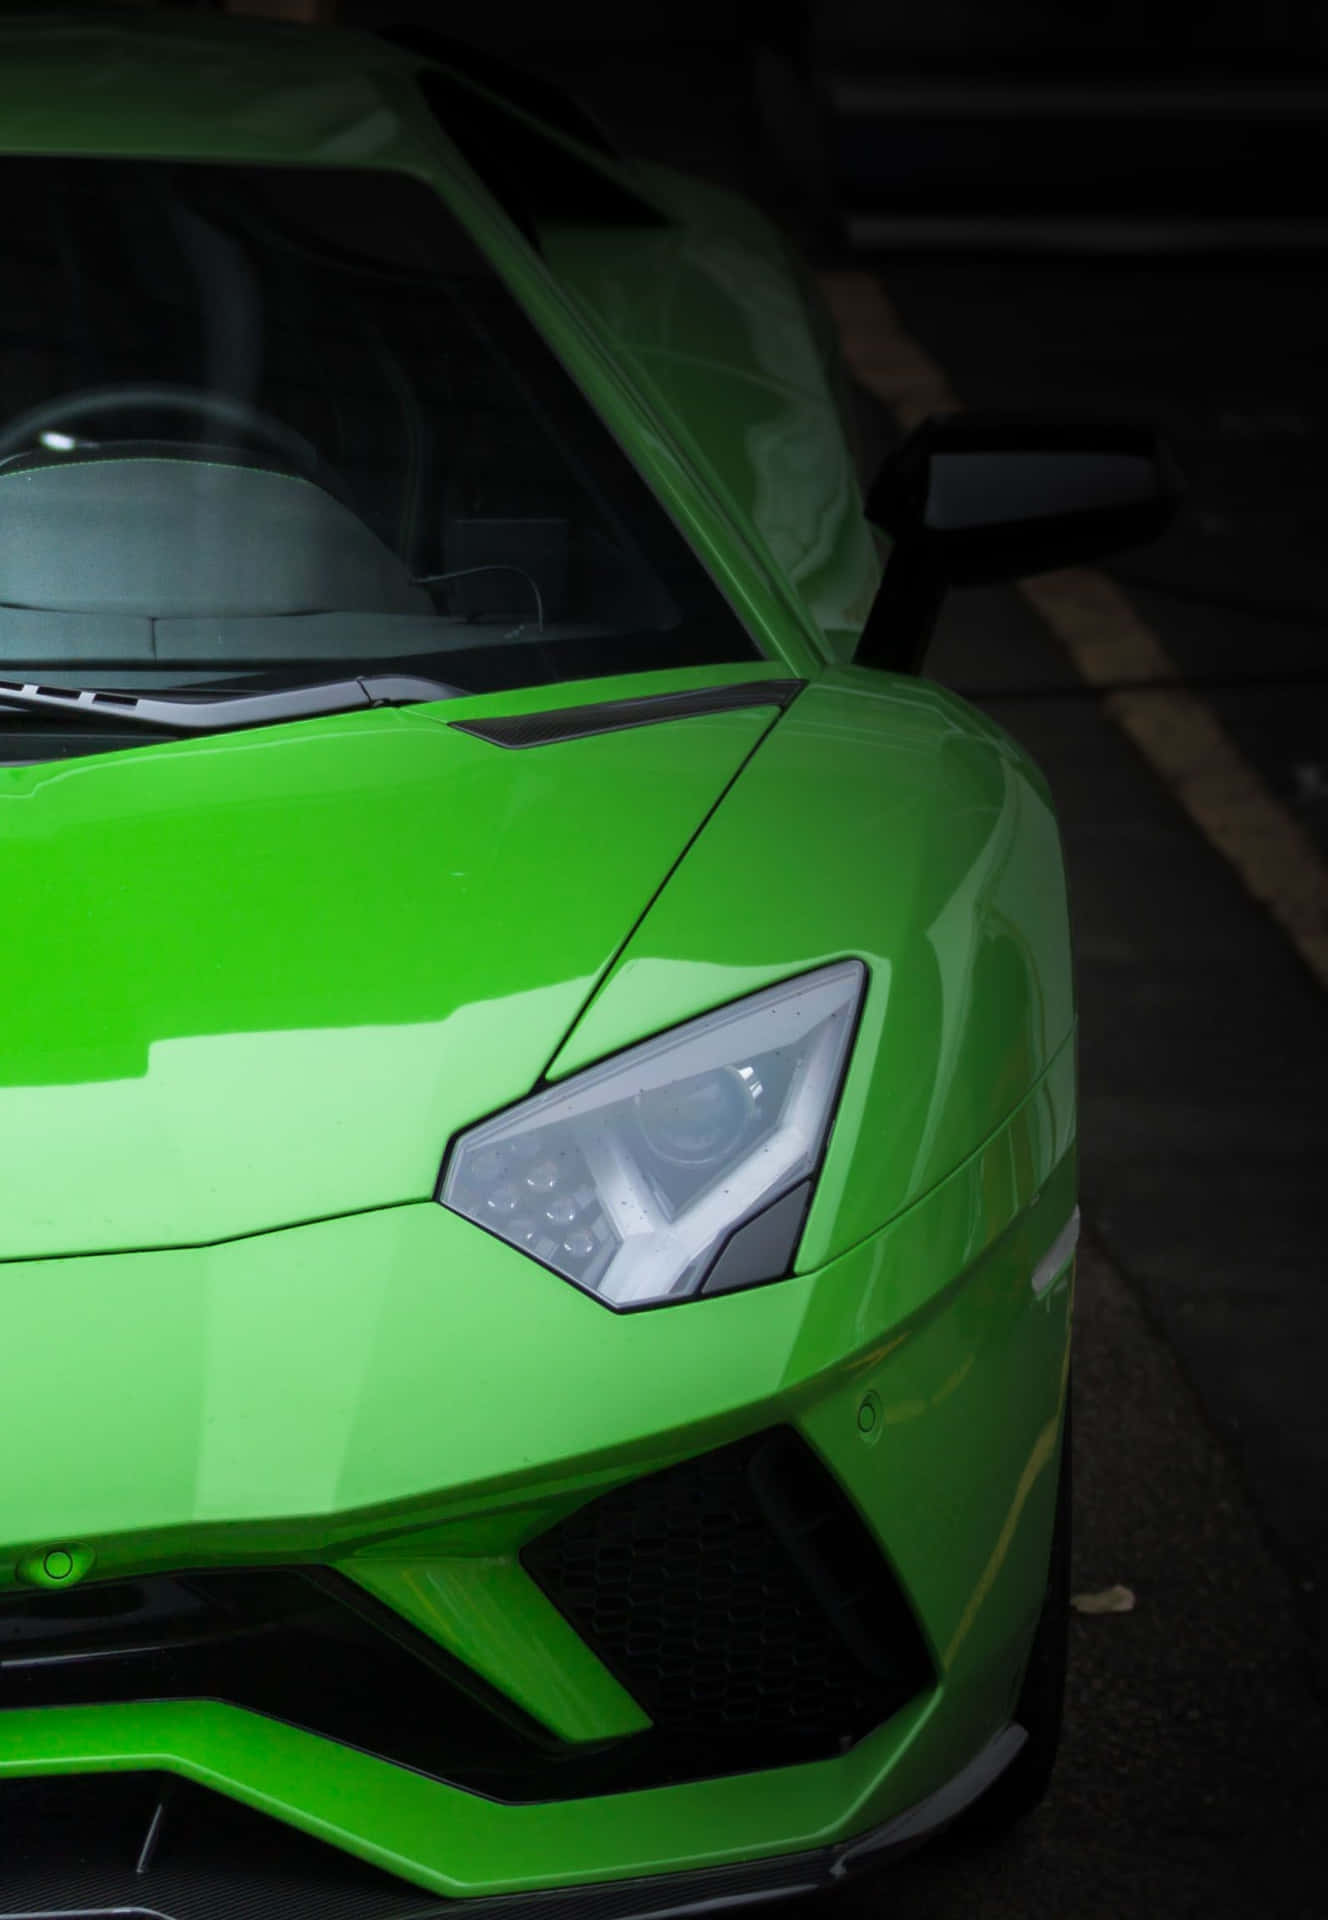 Skal du have et indblik i luksus? Se et detaljeret billede af en grøn Lamborghini. Wallpaper